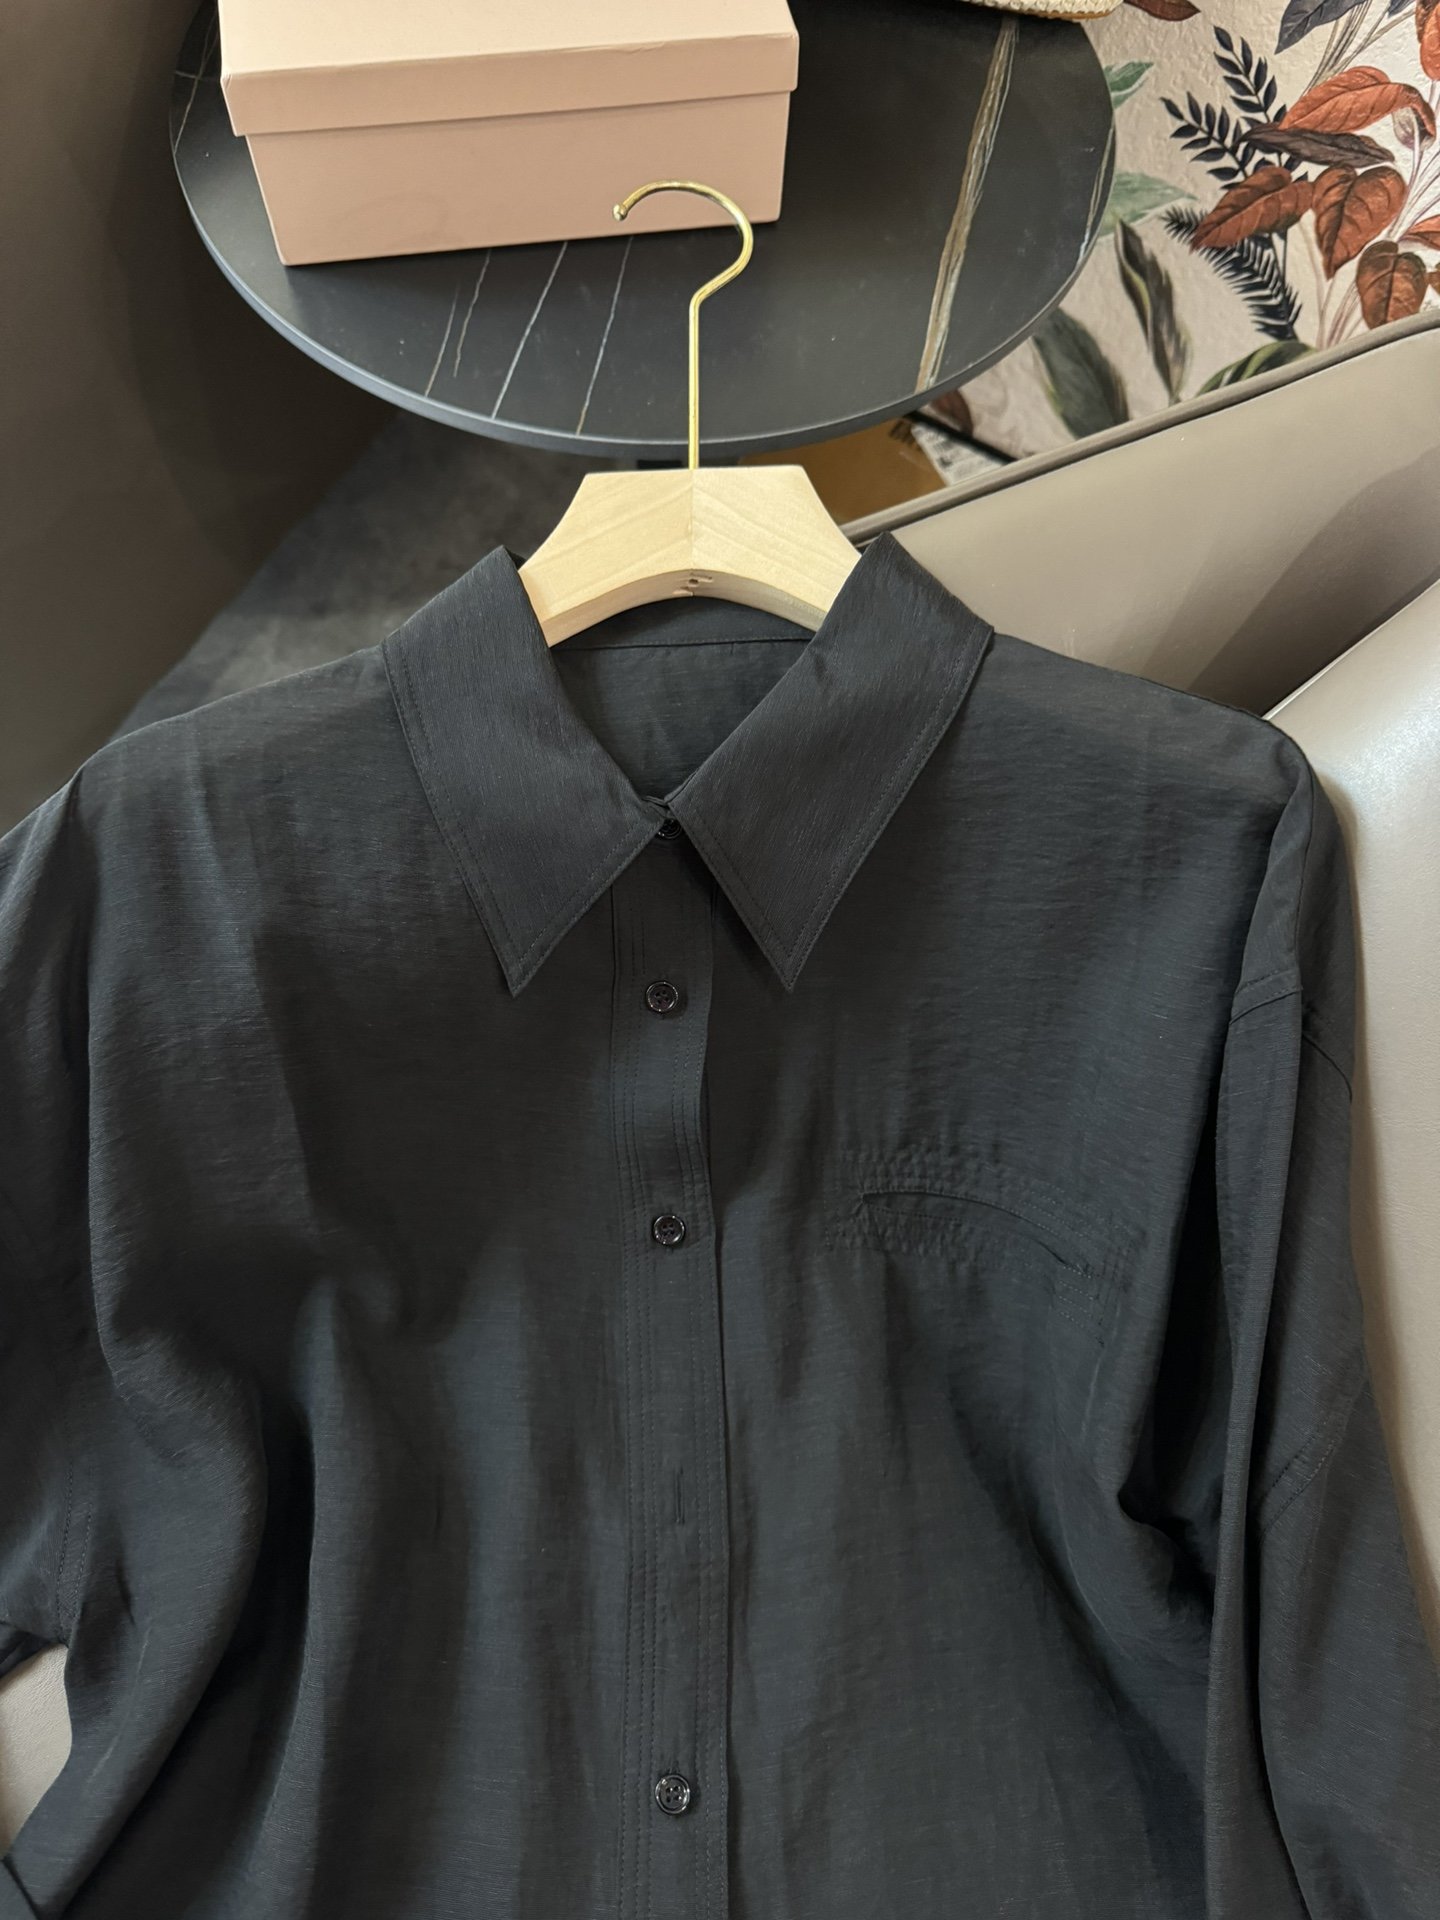 LZ029#新款衬衫BC30%亚麻长袖防晒衬衫白色黑色蓝色SML